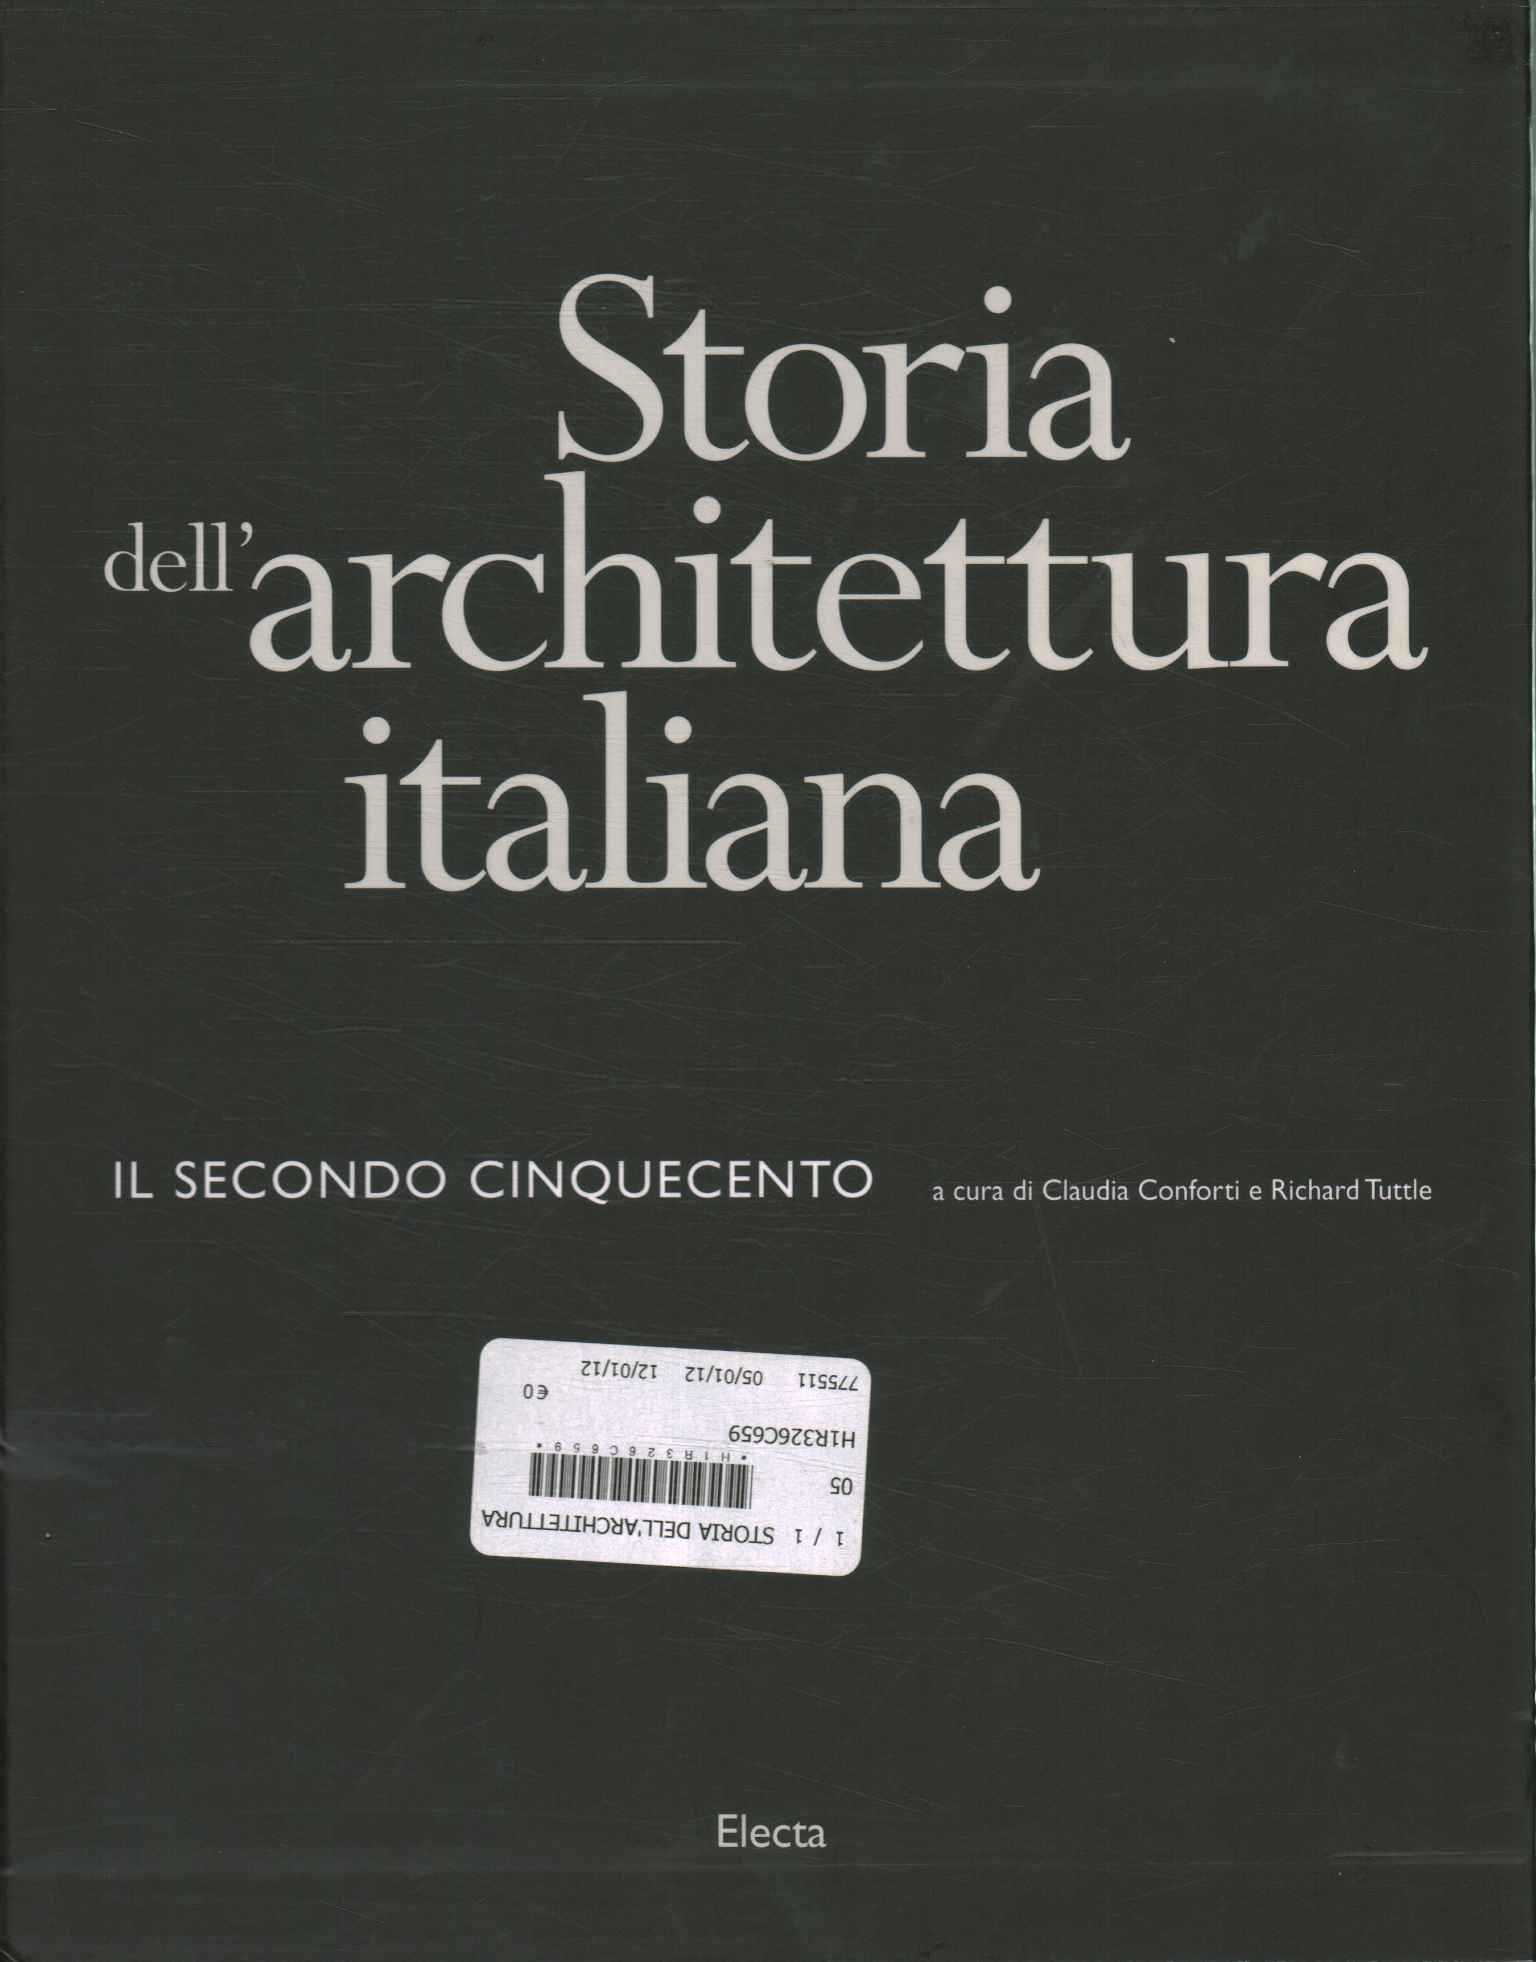 Historia de la arquitectura italiana.%,Historia de la arquitectura italiana.%,Historia de la arquitectura italiana.%,Historia de la arquitectura italiana.%